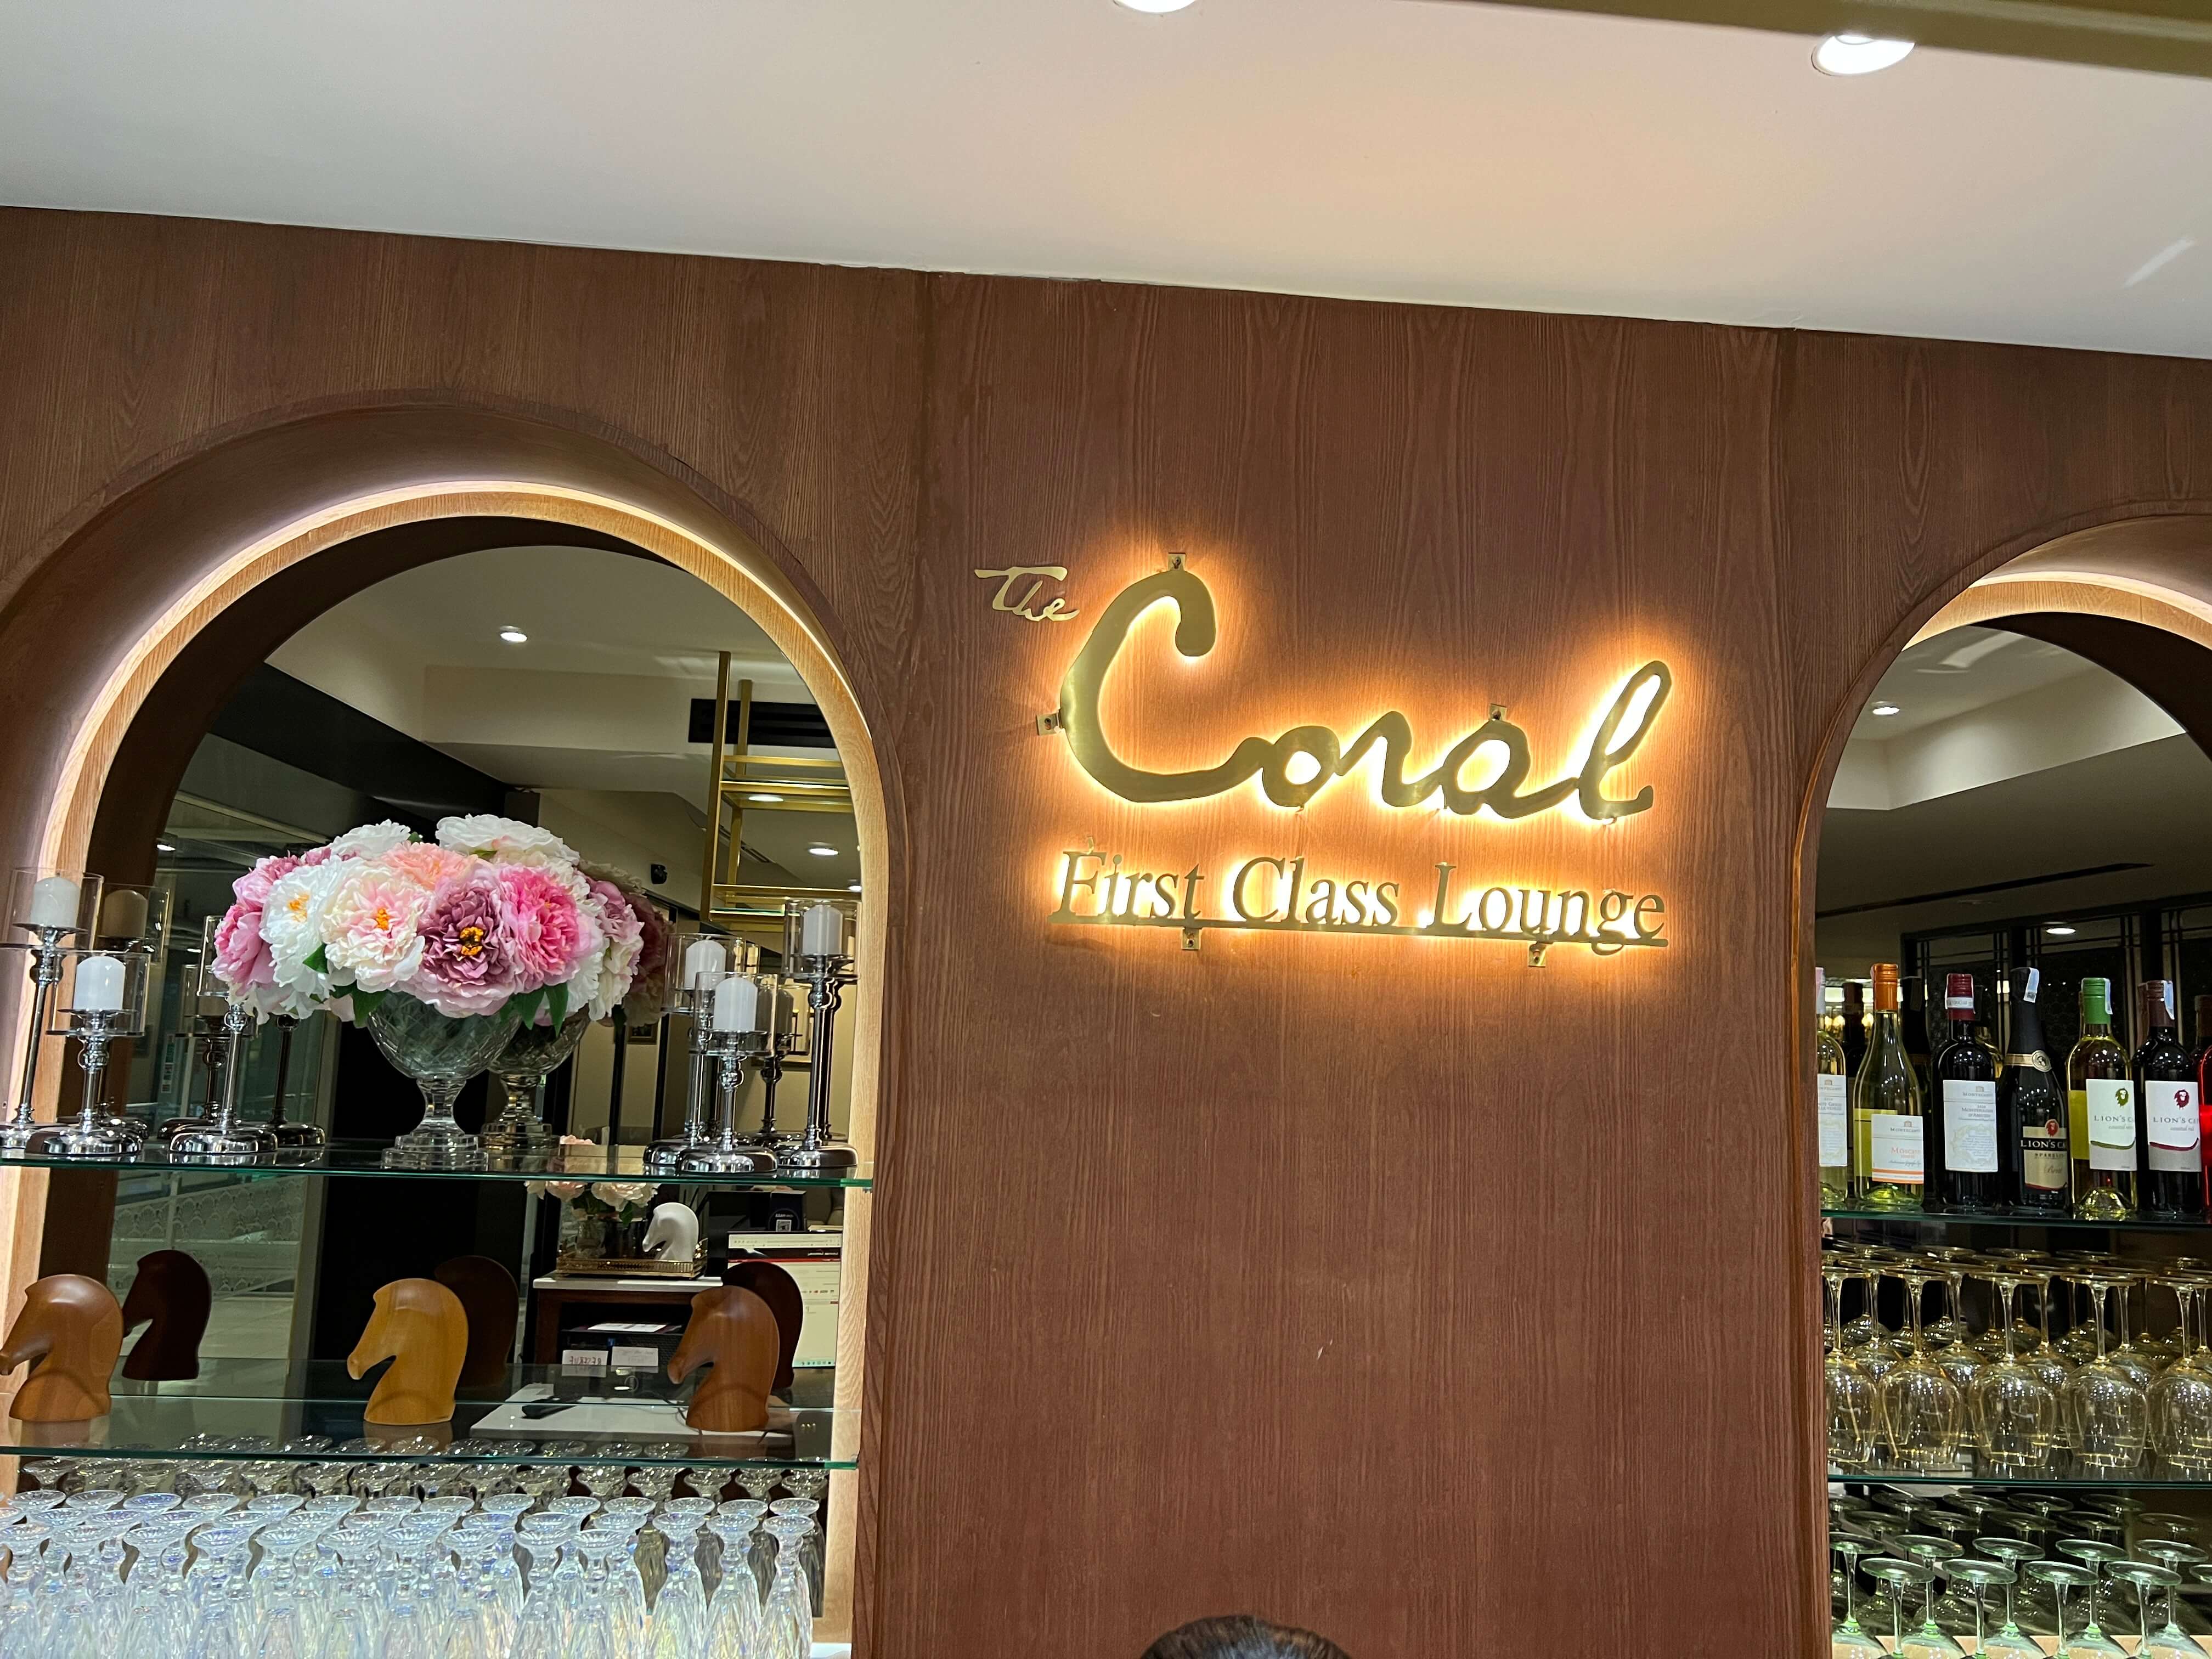 【泰國曼谷機場高質Priority Pass Lounge - The Coral】有免費15分鐘按摩 + 即製Cocktail bar + 自助餐 + 愛馬仕design！另可付費沐浴 + 睡床！